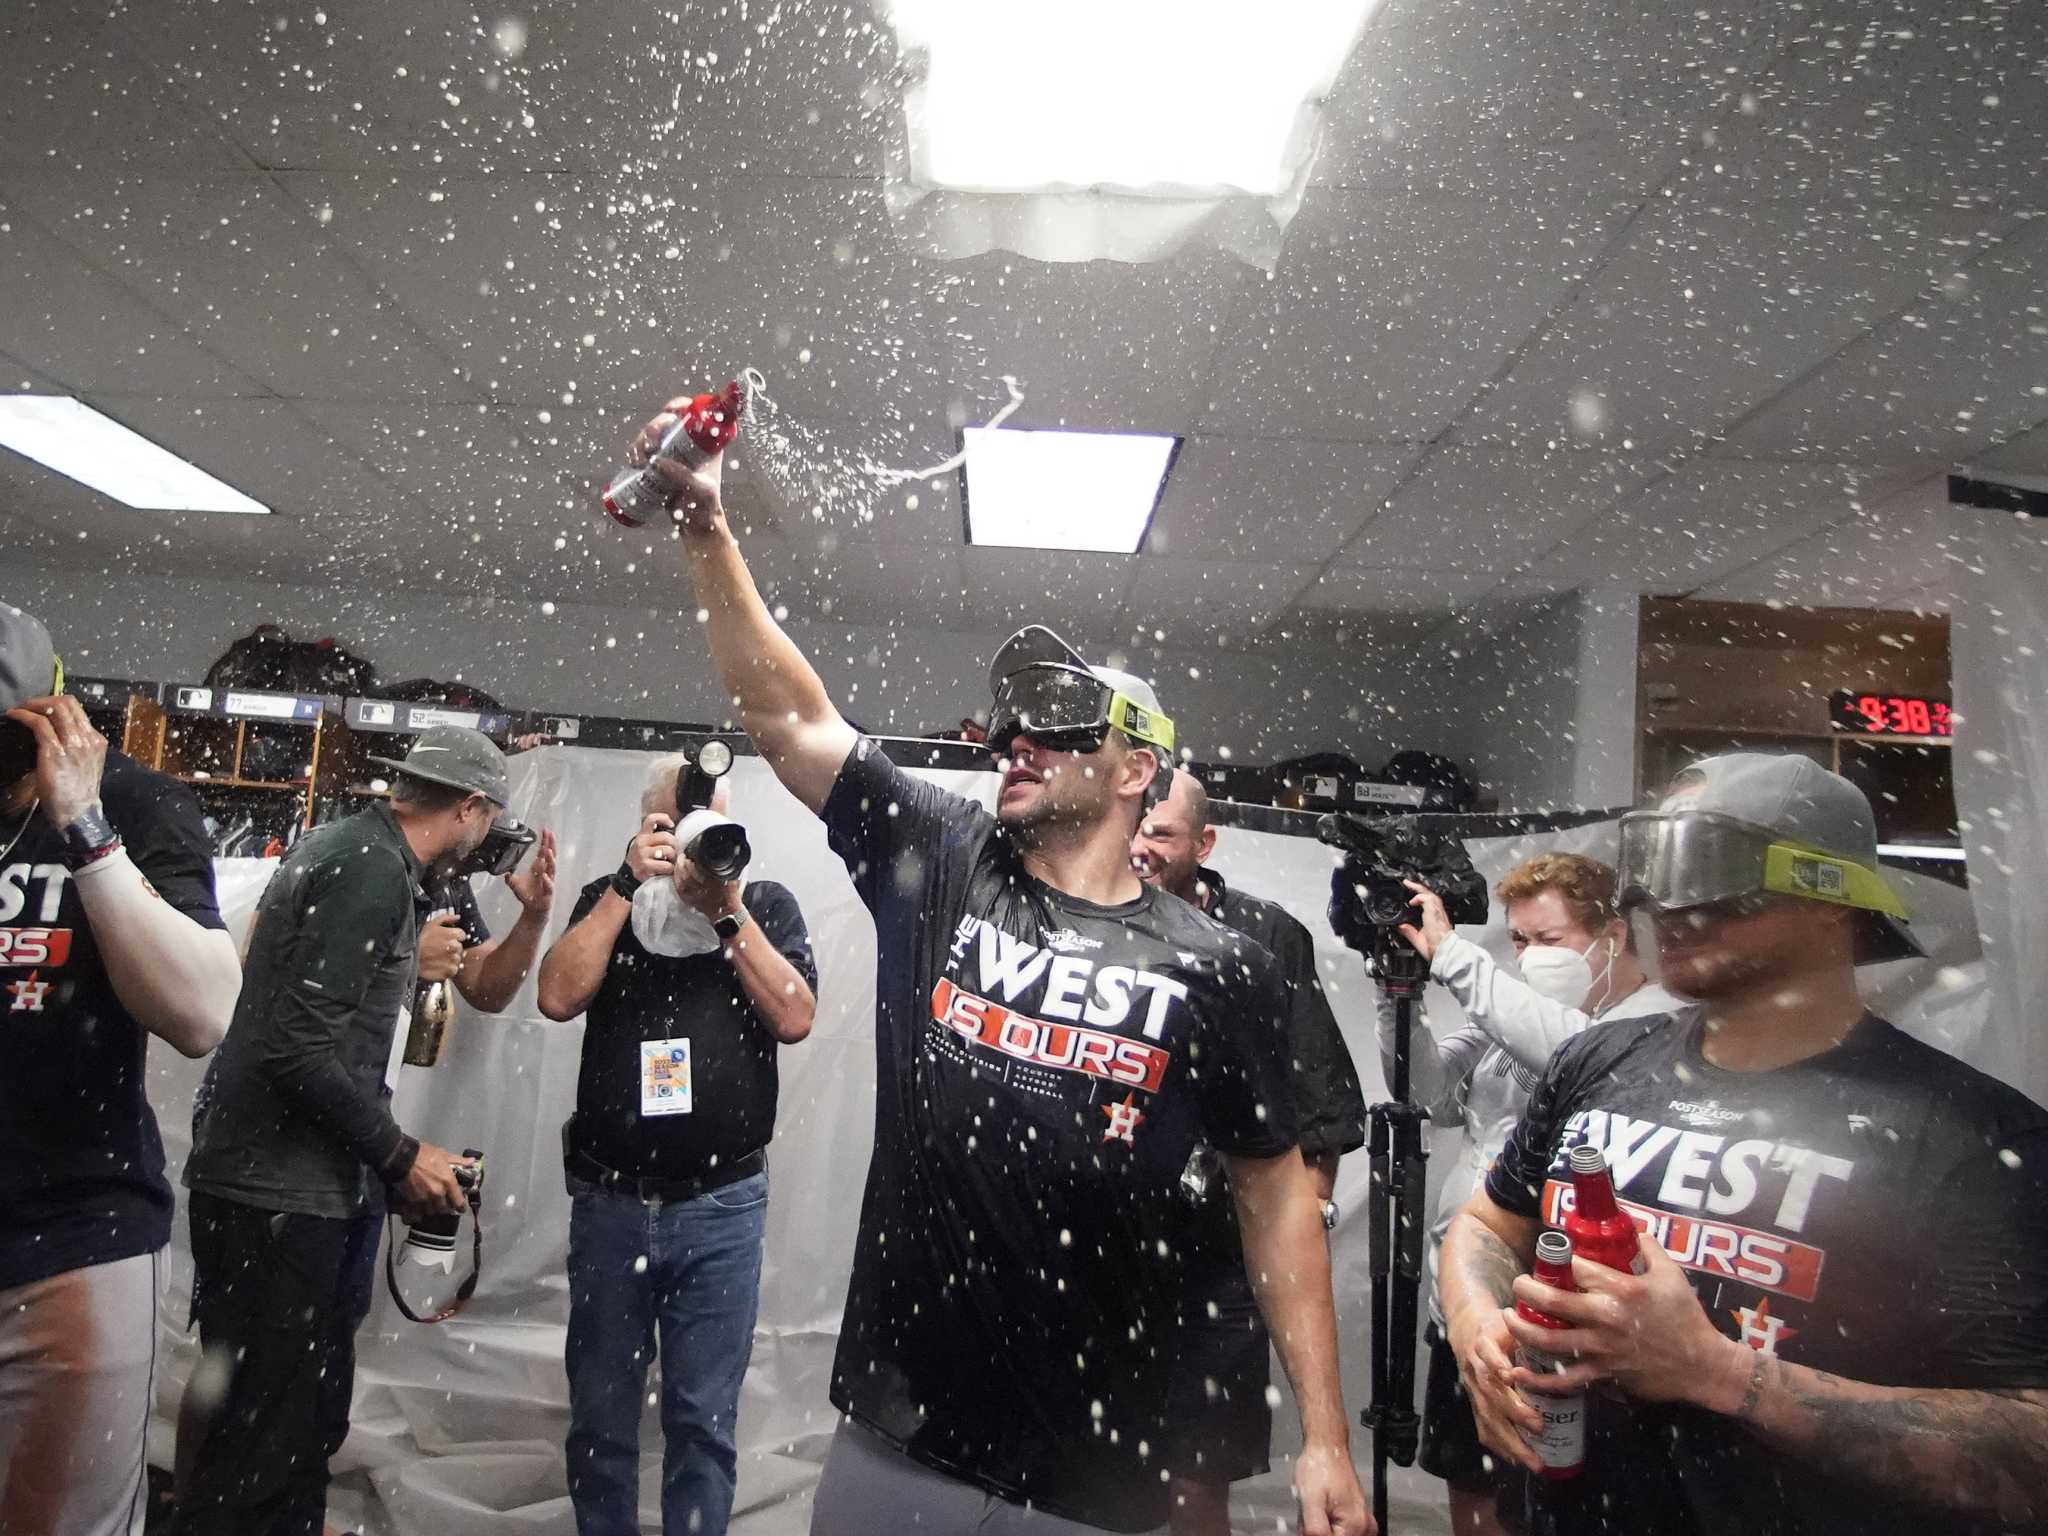 Houston Astros players' celebration photos on Instagram